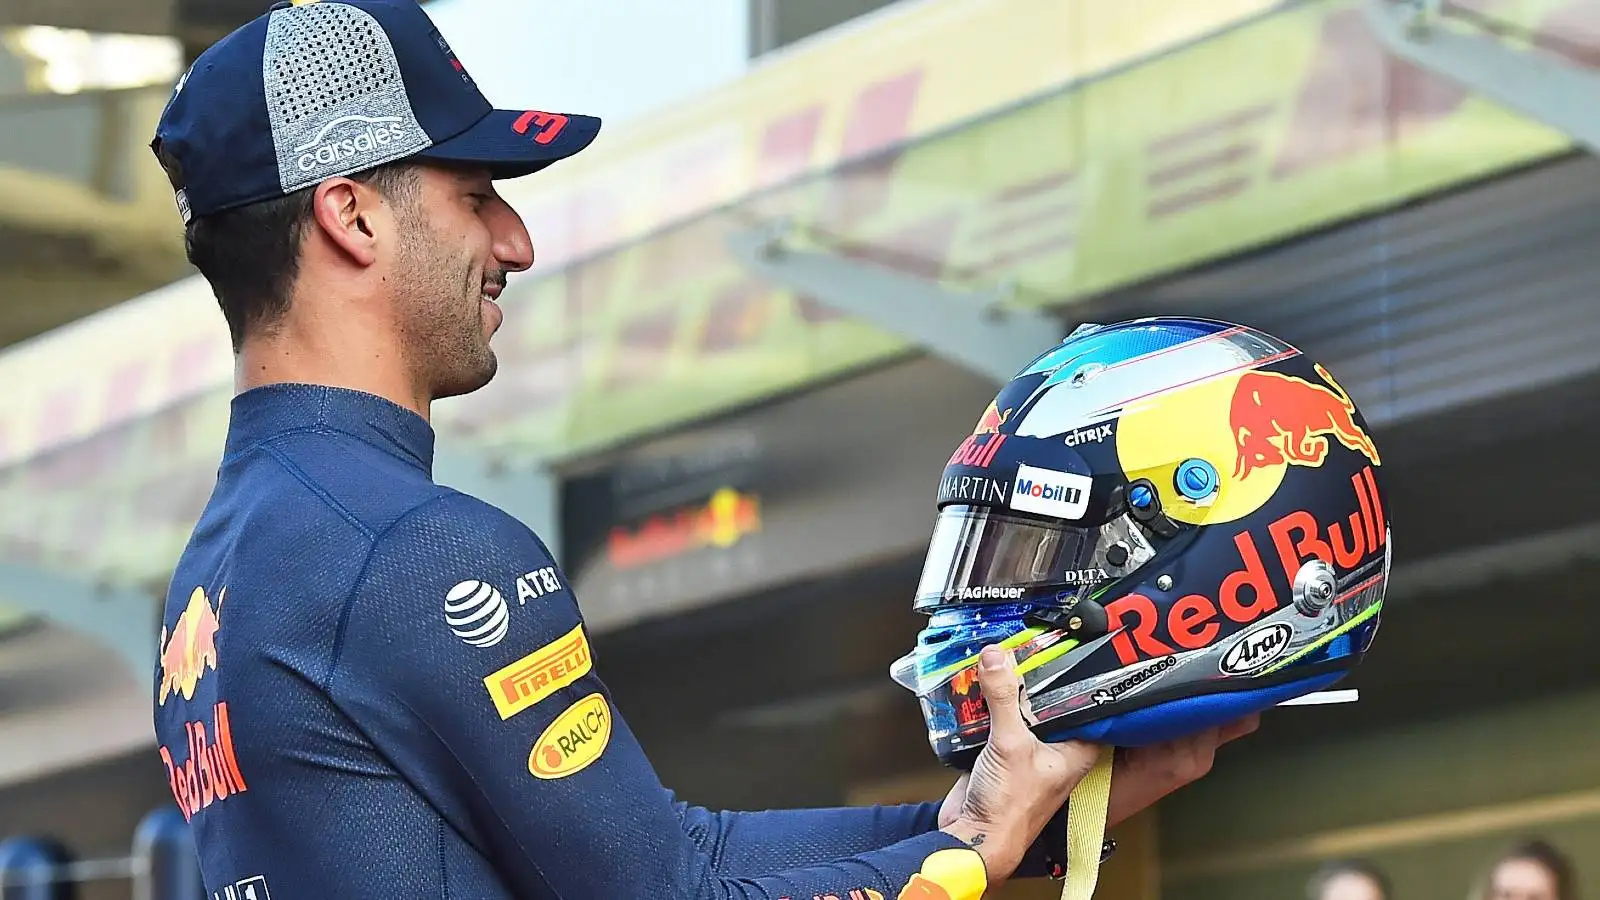 Daniel Ricciardo in Red Bull race suit. Abu Dhabi November 2018.